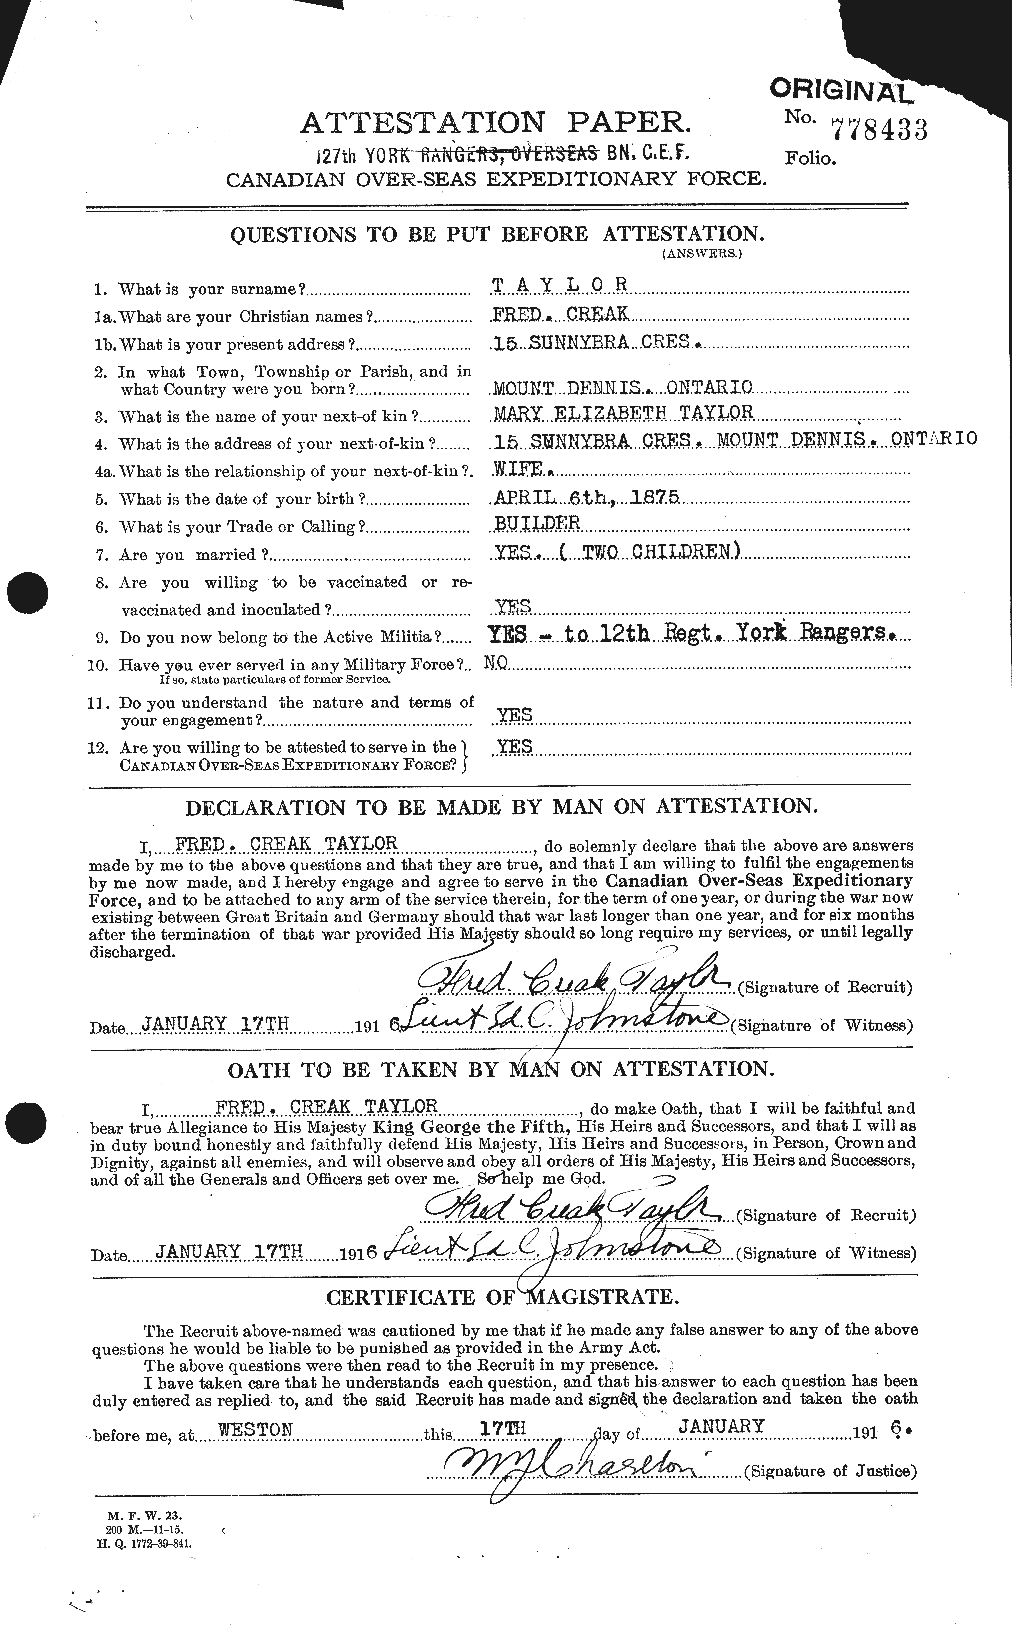 Dossiers du Personnel de la Première Guerre mondiale - CEC 625751a